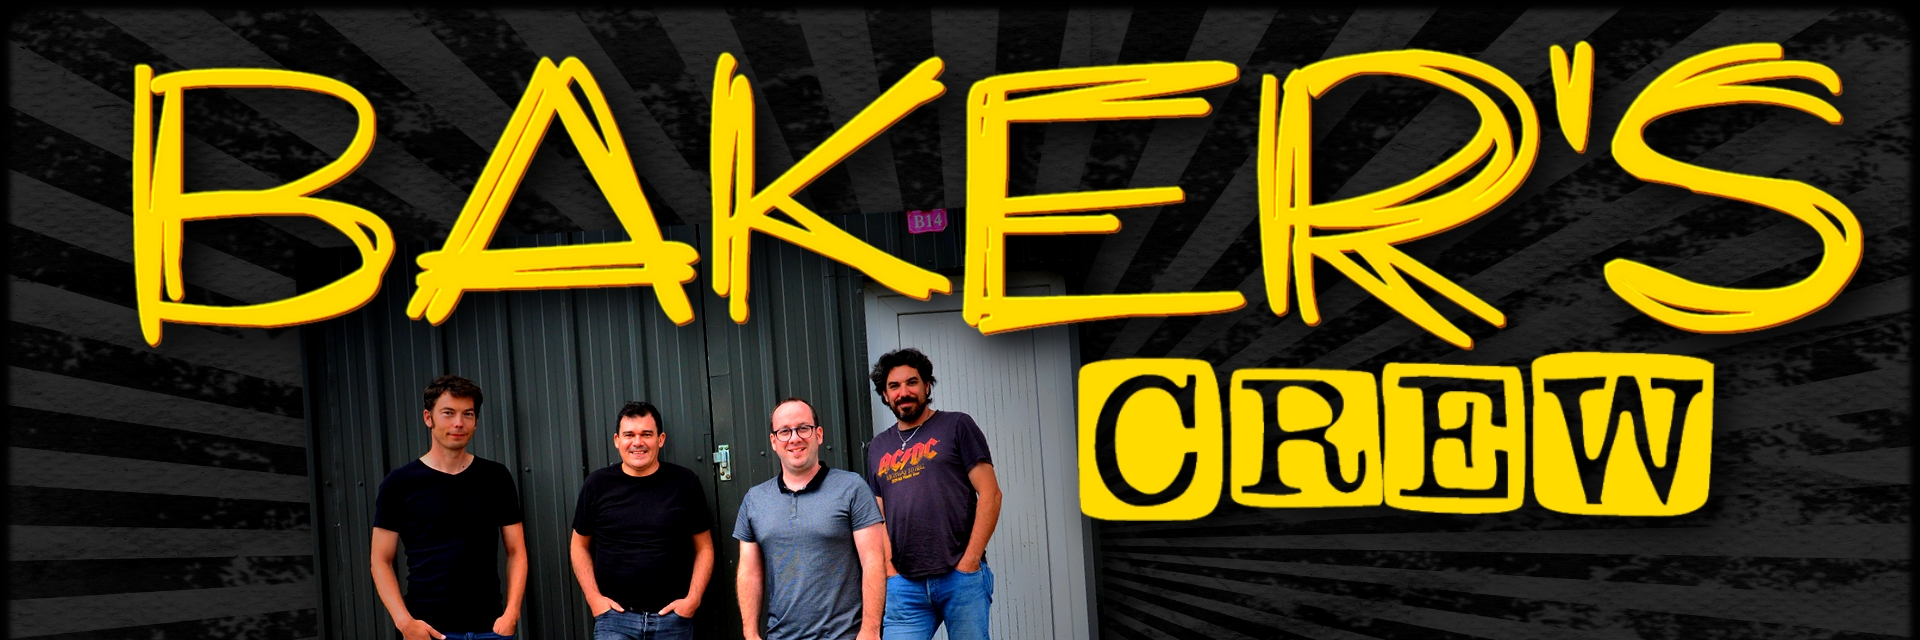 Baker's Crew, groupe de musique Rock en représentation à Finistère - photo de couverture n° 5